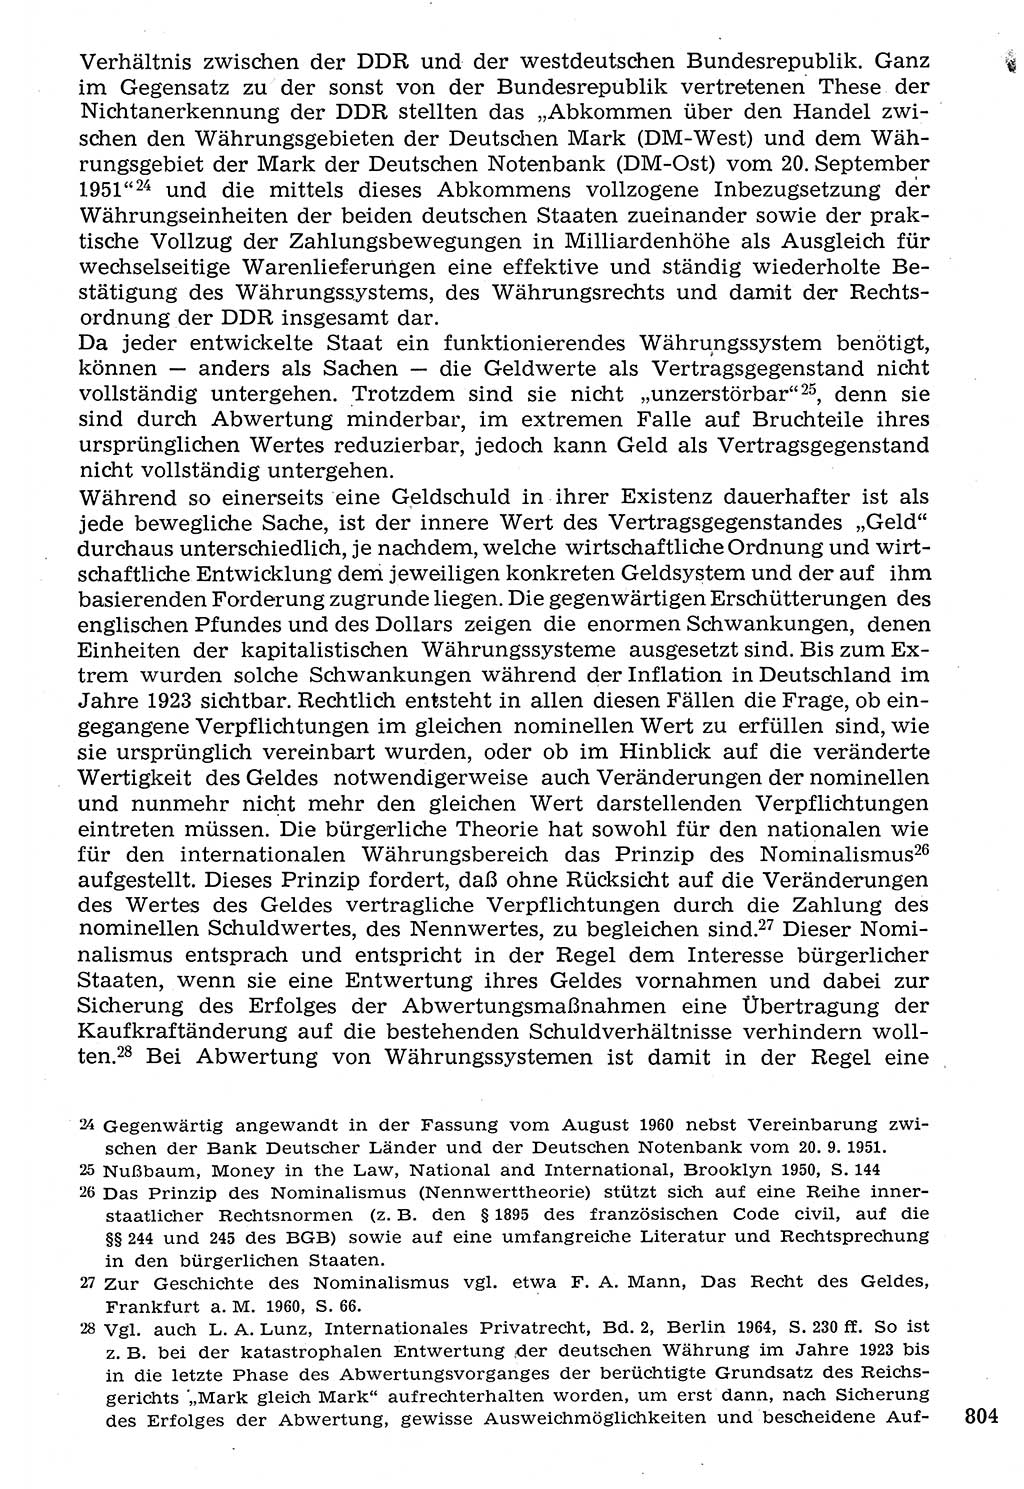 Staat und Recht (StuR), 17. Jahrgang [Deutsche Demokratische Republik (DDR)] 1968, Seite 804 (StuR DDR 1968, S. 804)